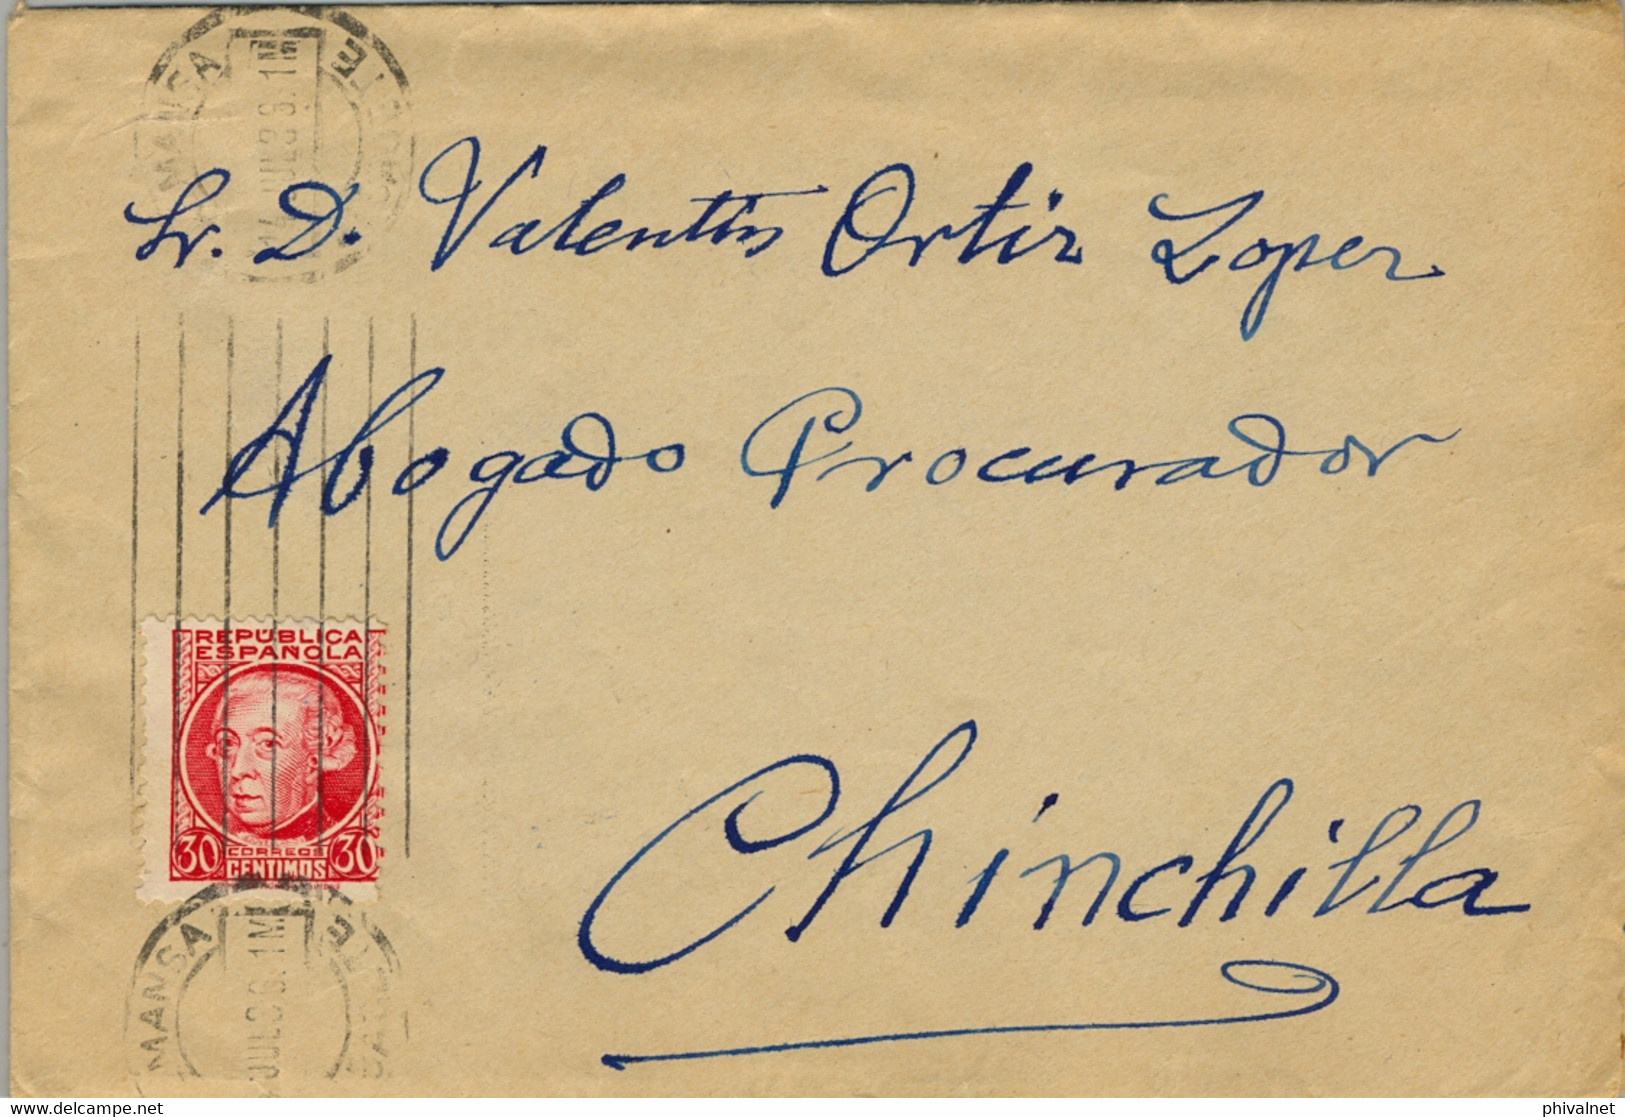 1936 ALBACETE , SOBRE CIRCULADO ENTRE ALMANSA Y CHINCHILLA ,  LLEGADA EN AZUL AL DORSO - Brieven En Documenten